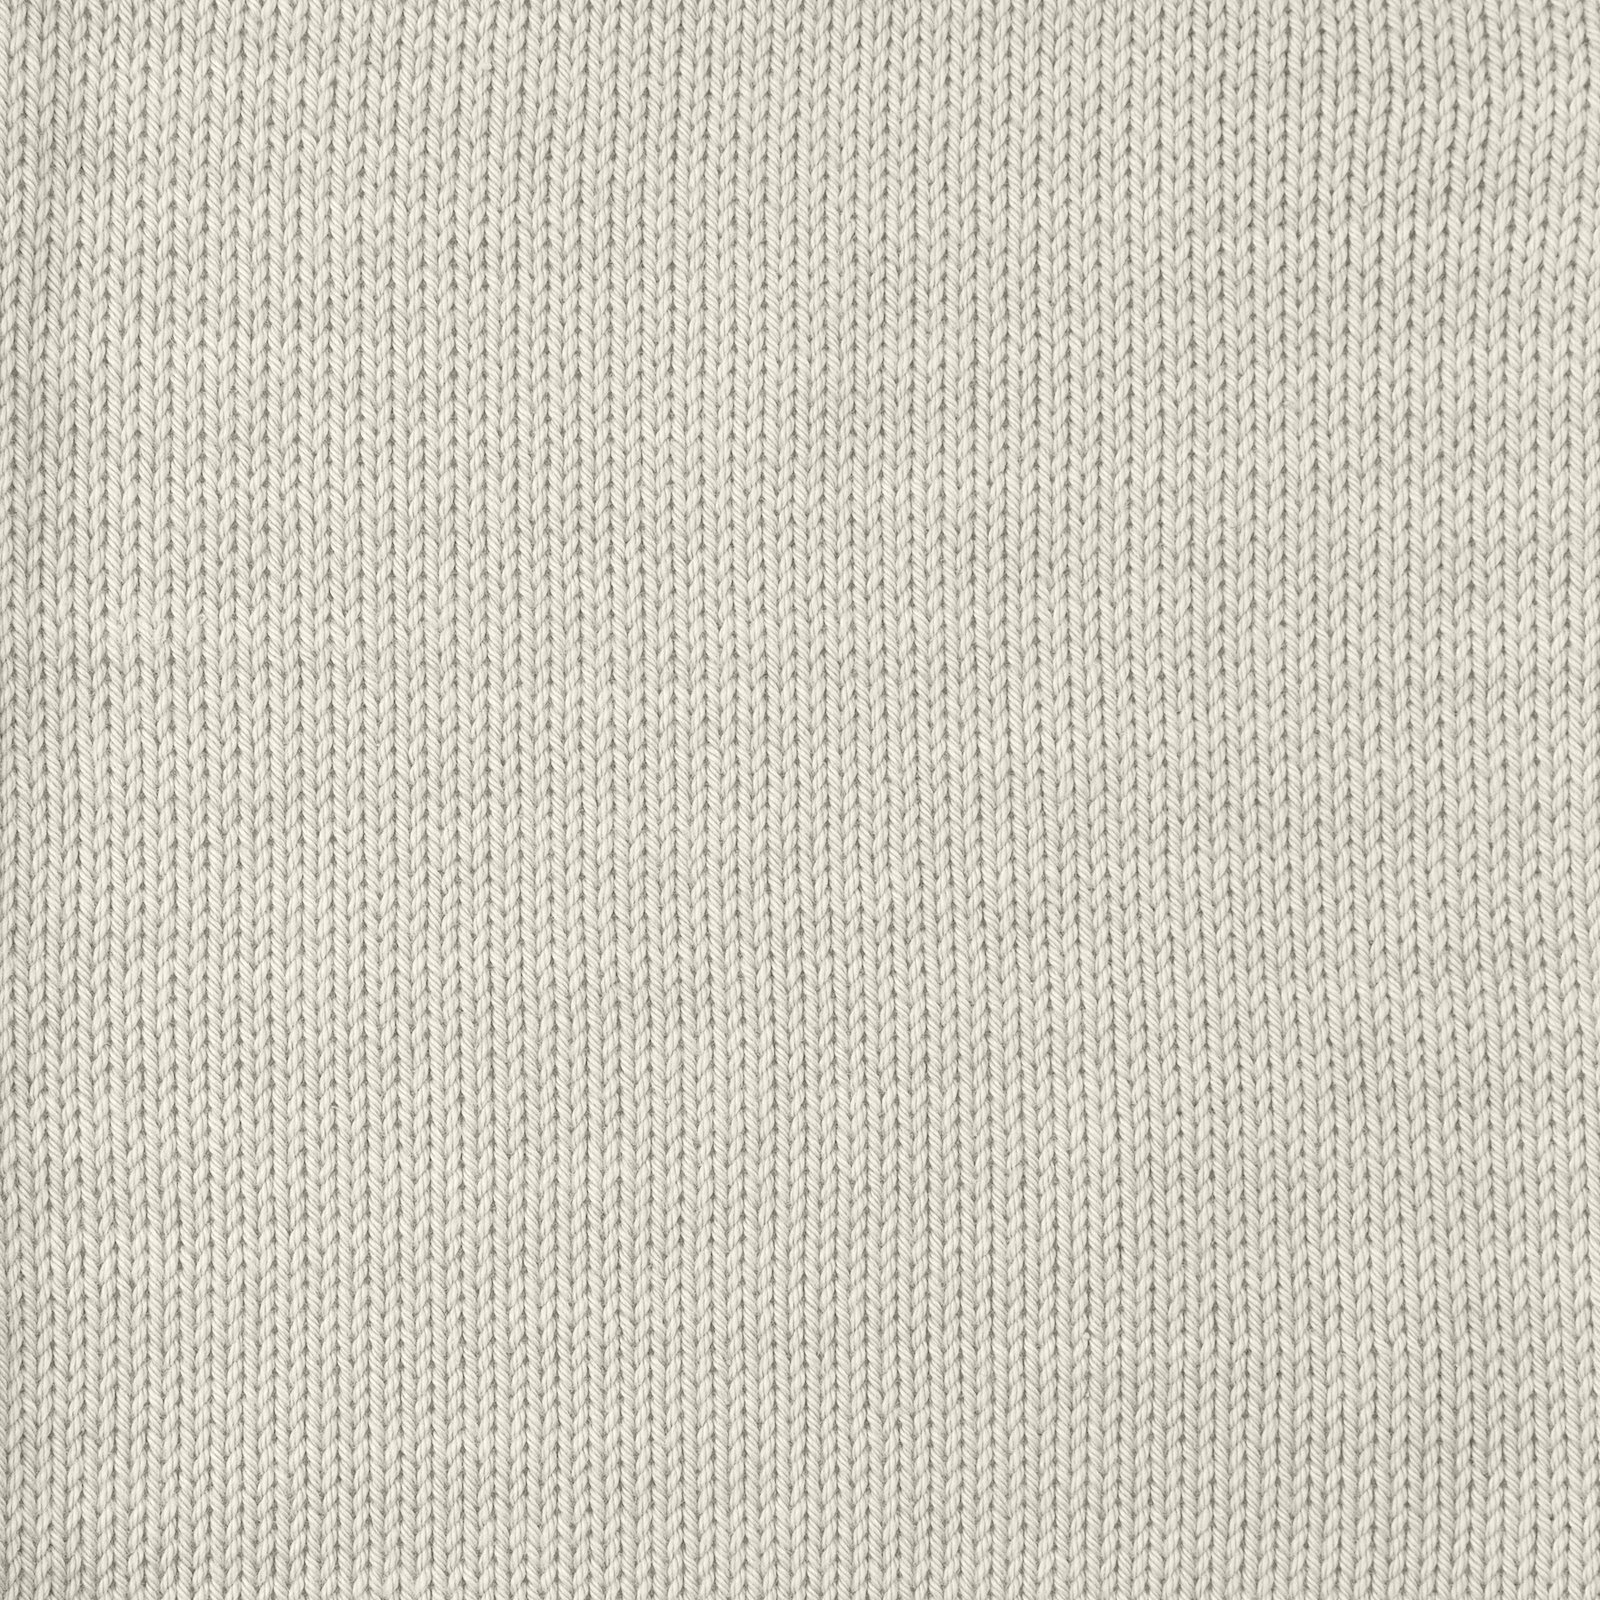 FRAYA, 100% bomuldsgarn, Cotton 8/4, "Colourful", lys grå 90060040_sskit